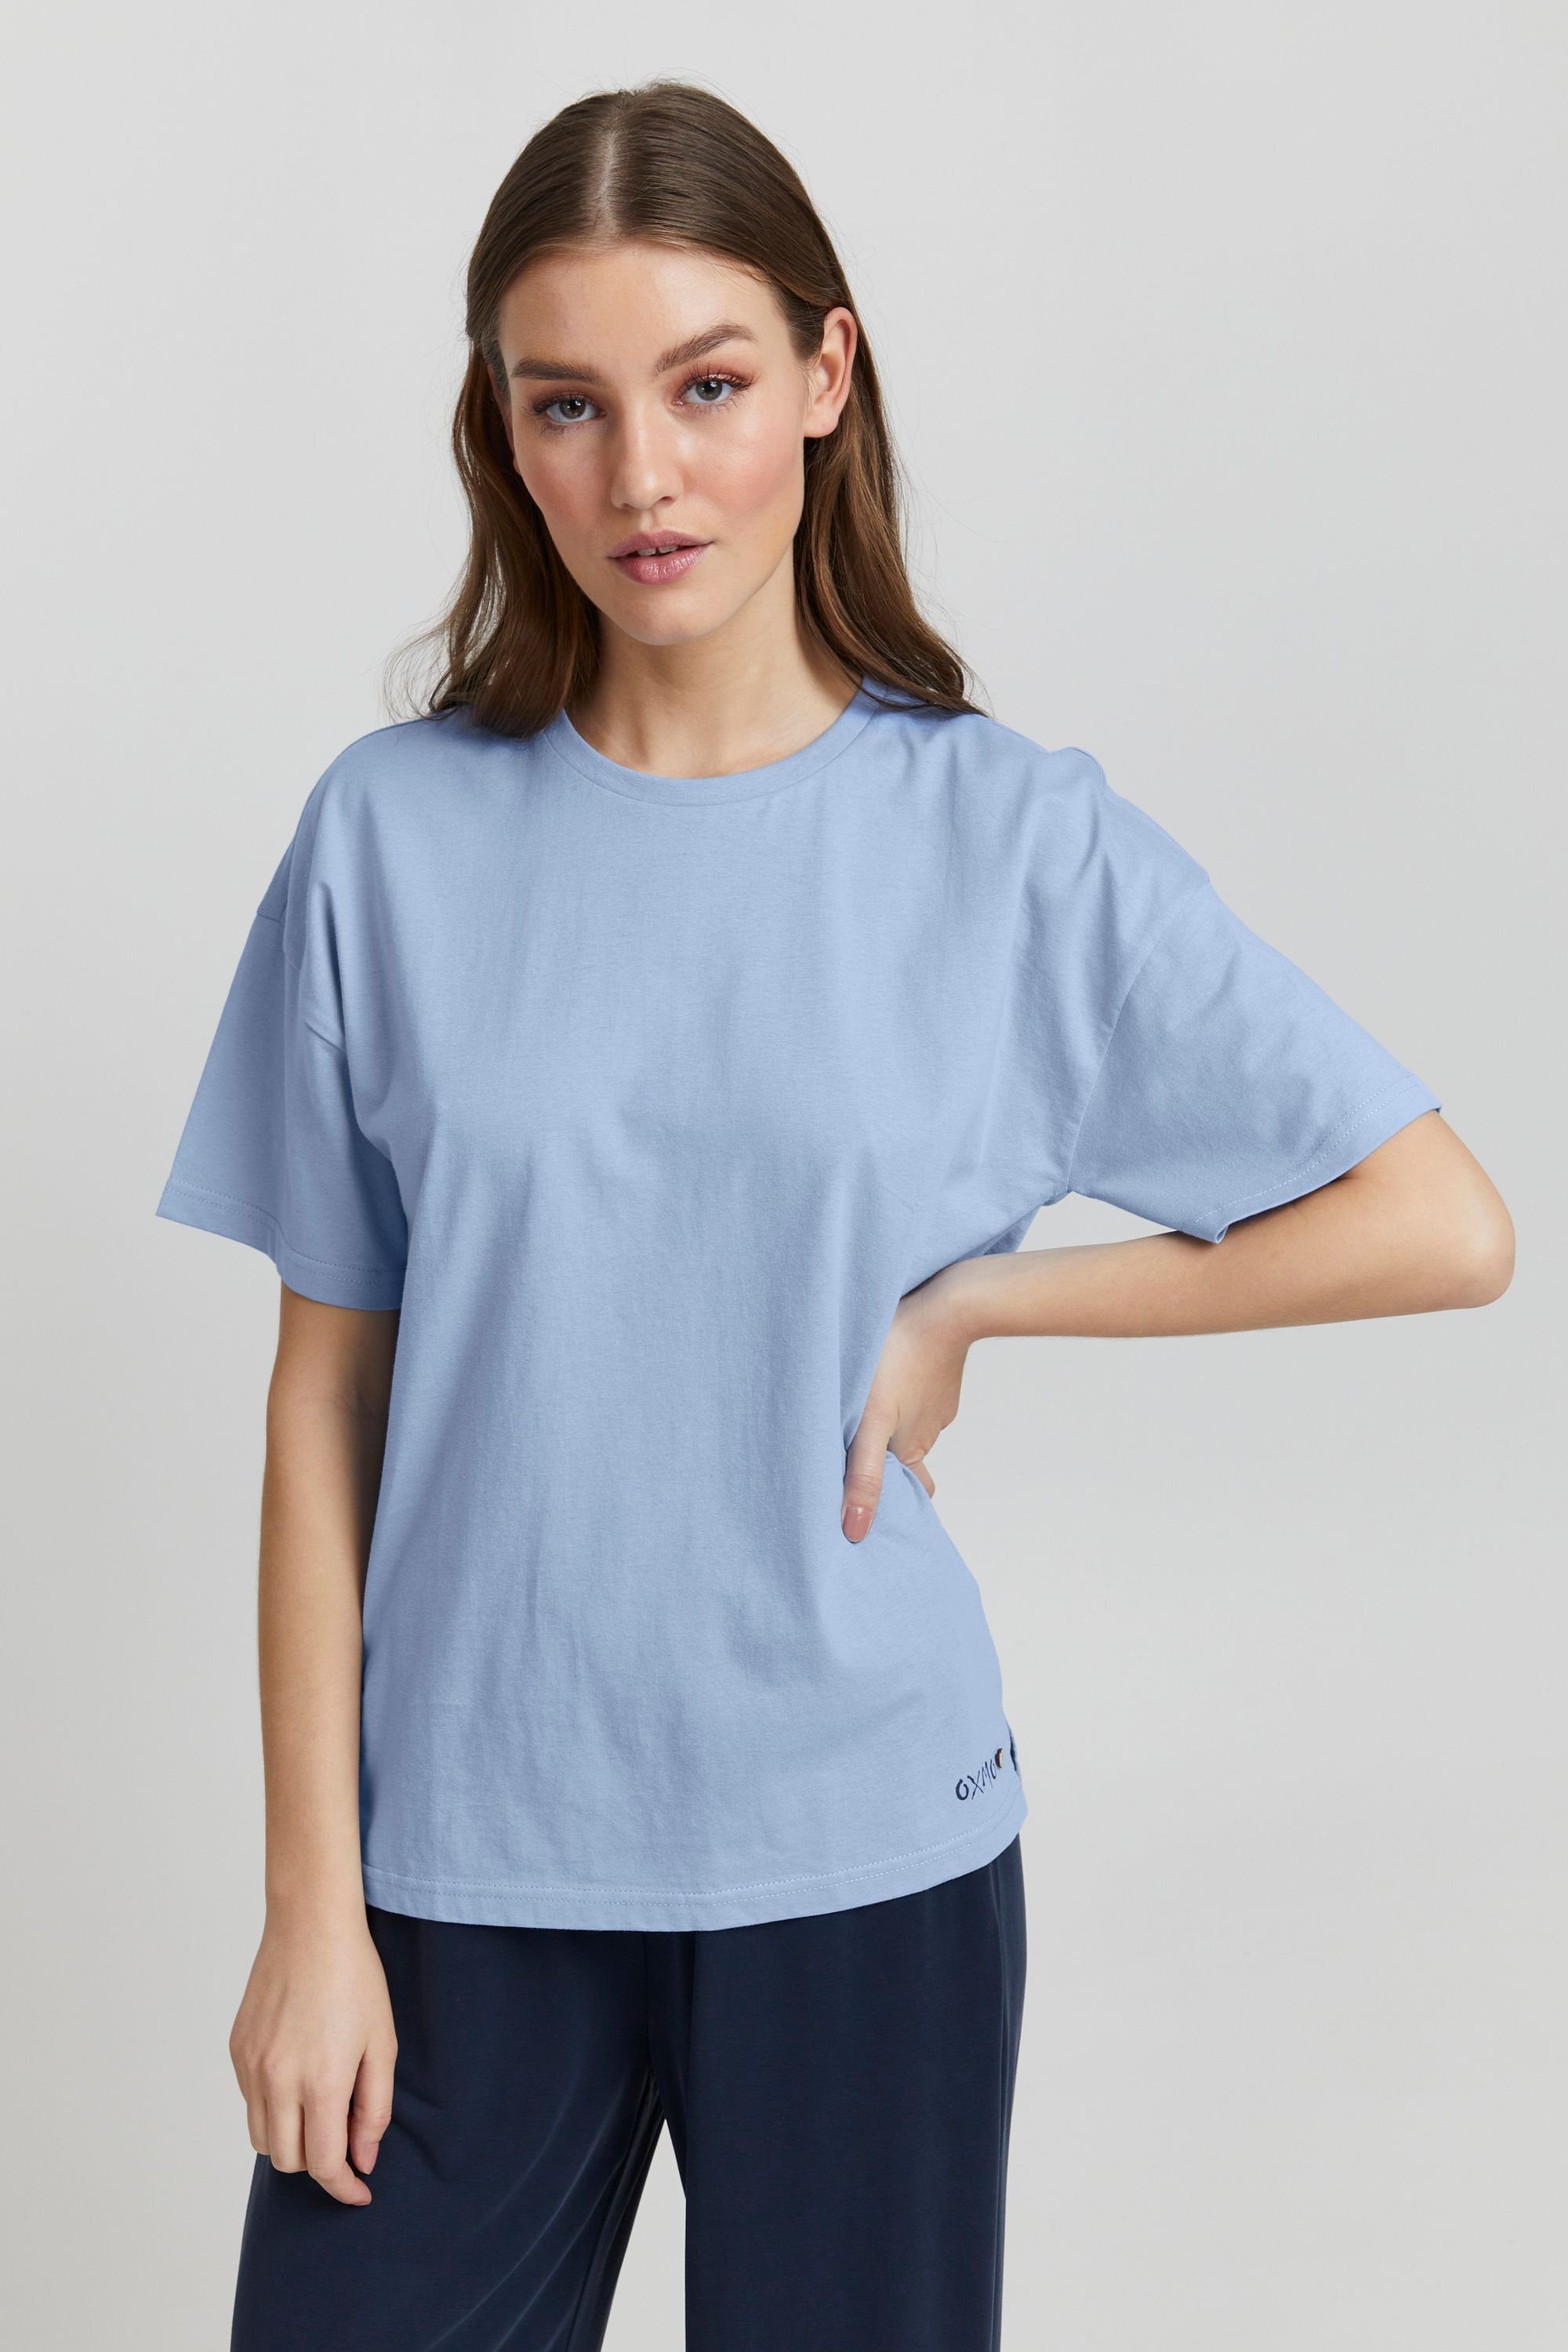 OXMO T-Shirt Pinala Bel Air Blue (153932)